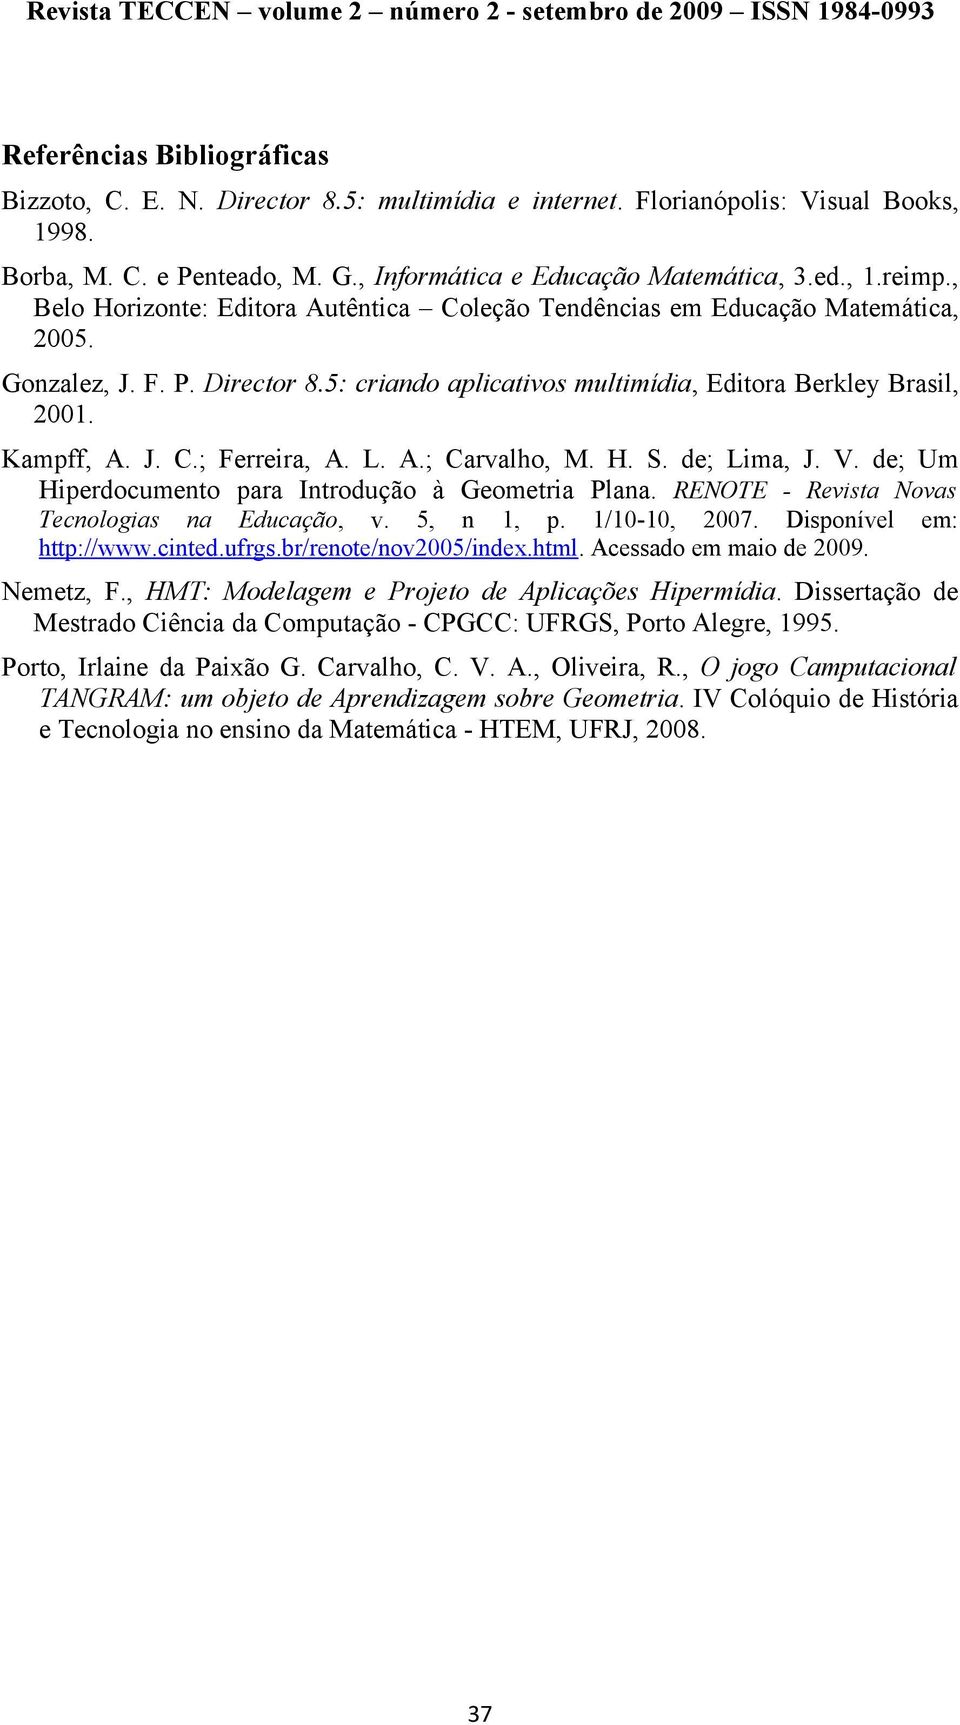 L. A.; Carvalho, M. H. S. de; Lima, J. V. de; Um Hiperdocumento para Introdução à Geometria Plana. RENOTE - Revista Novas Tecnologias na Educação, v. 5, n 1, p. 1/10-10, 2007. Disponível http://www.